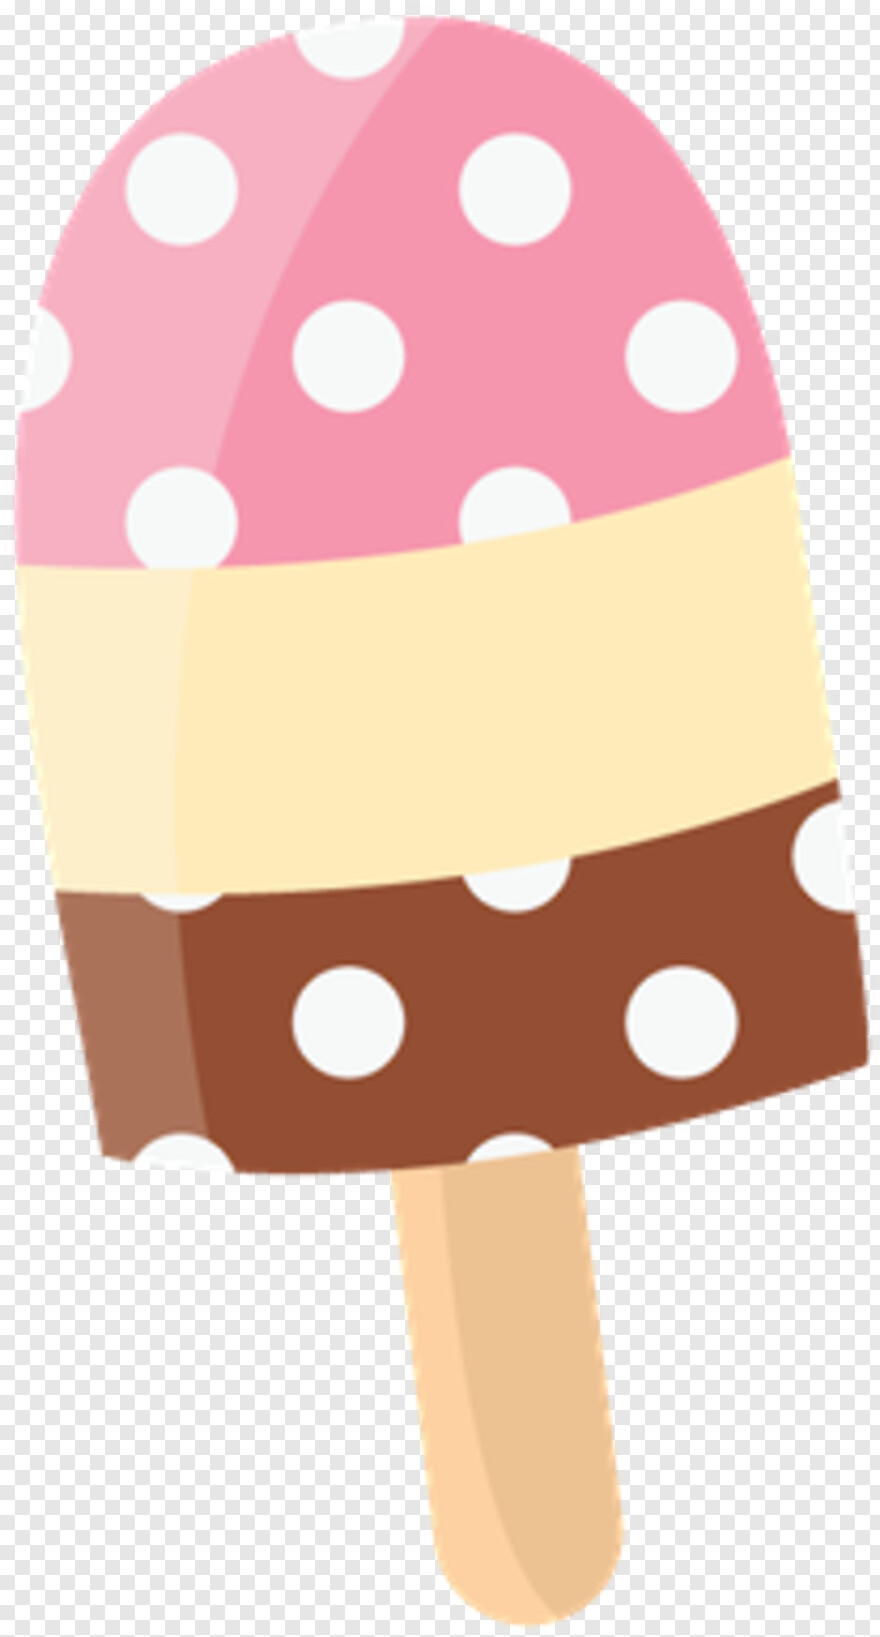 ice-cream-sundae # 999498